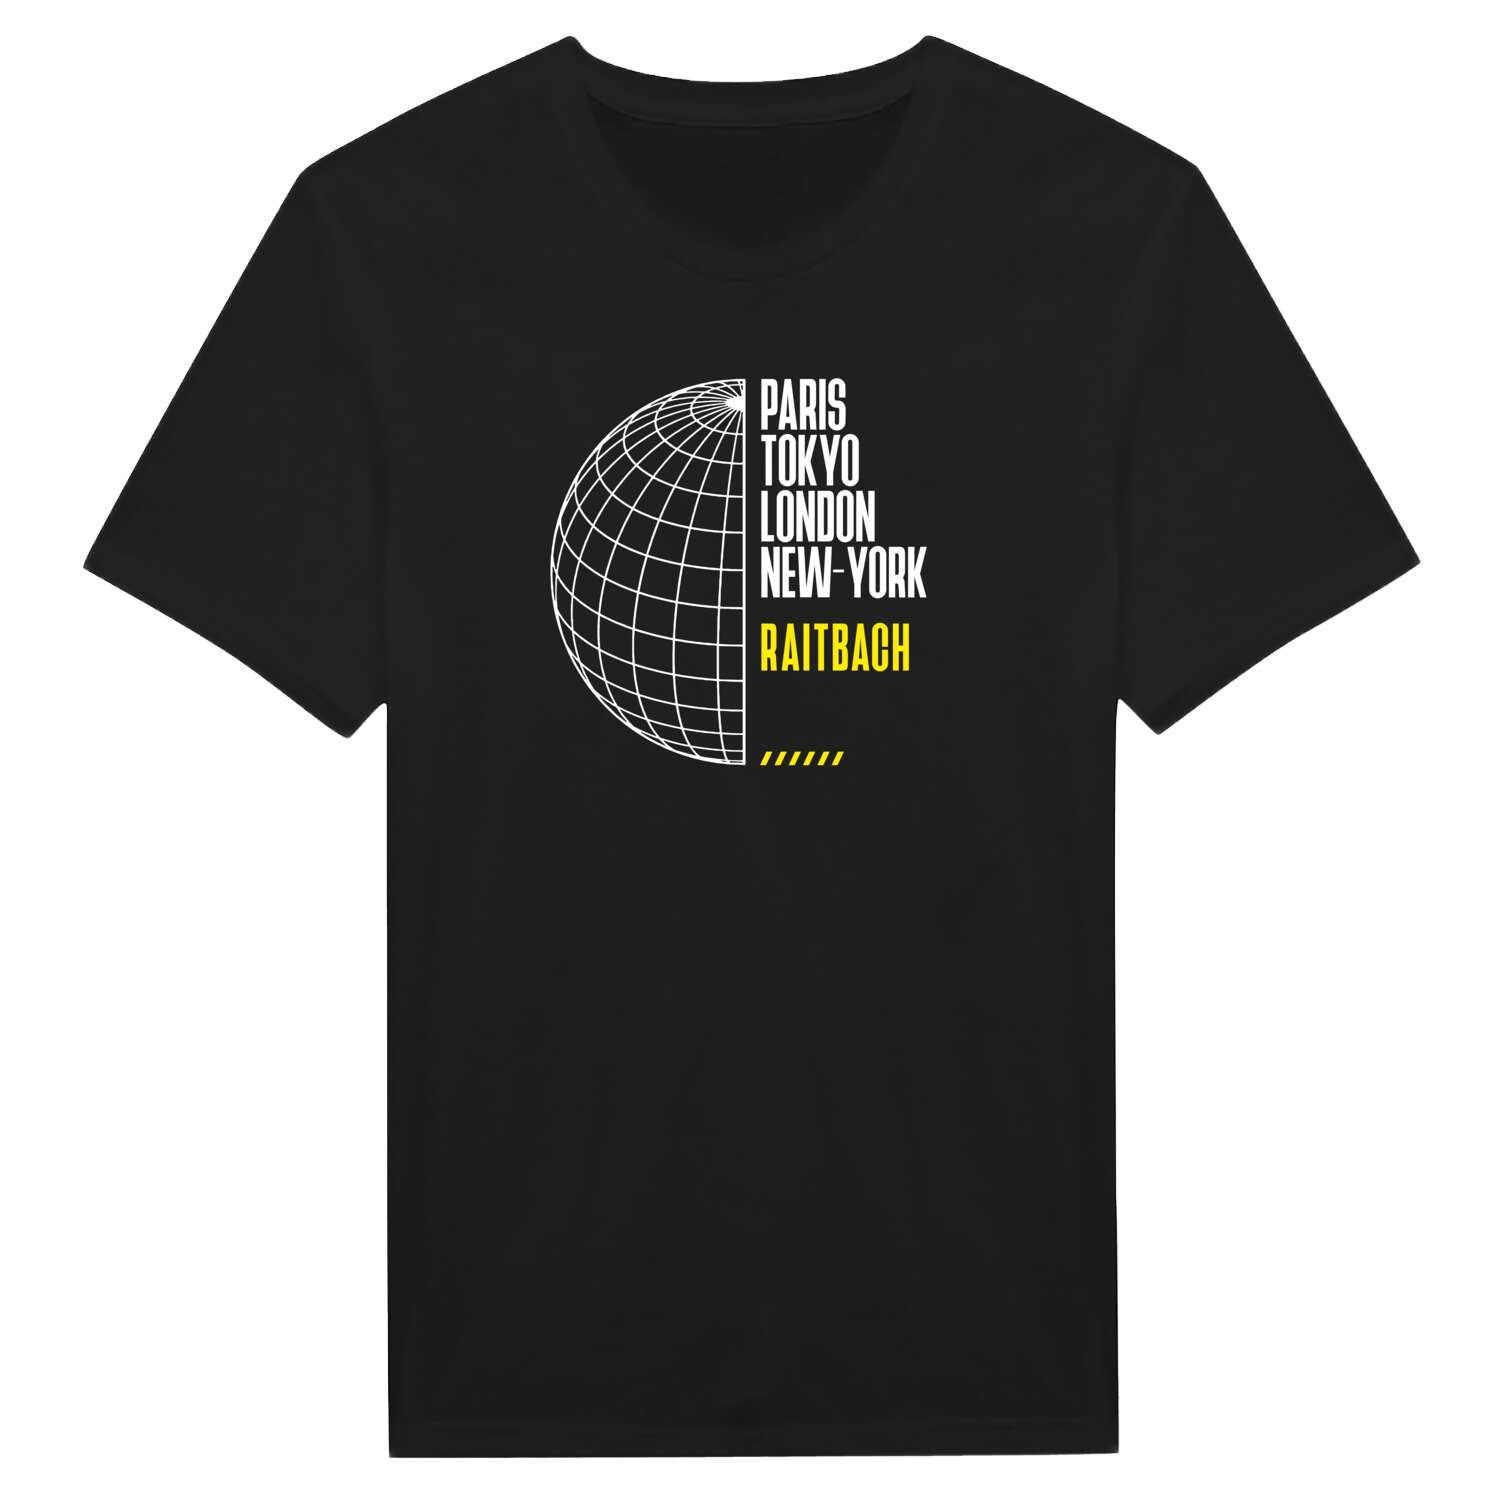 Raitbach T-Shirt »Paris Tokyo London«